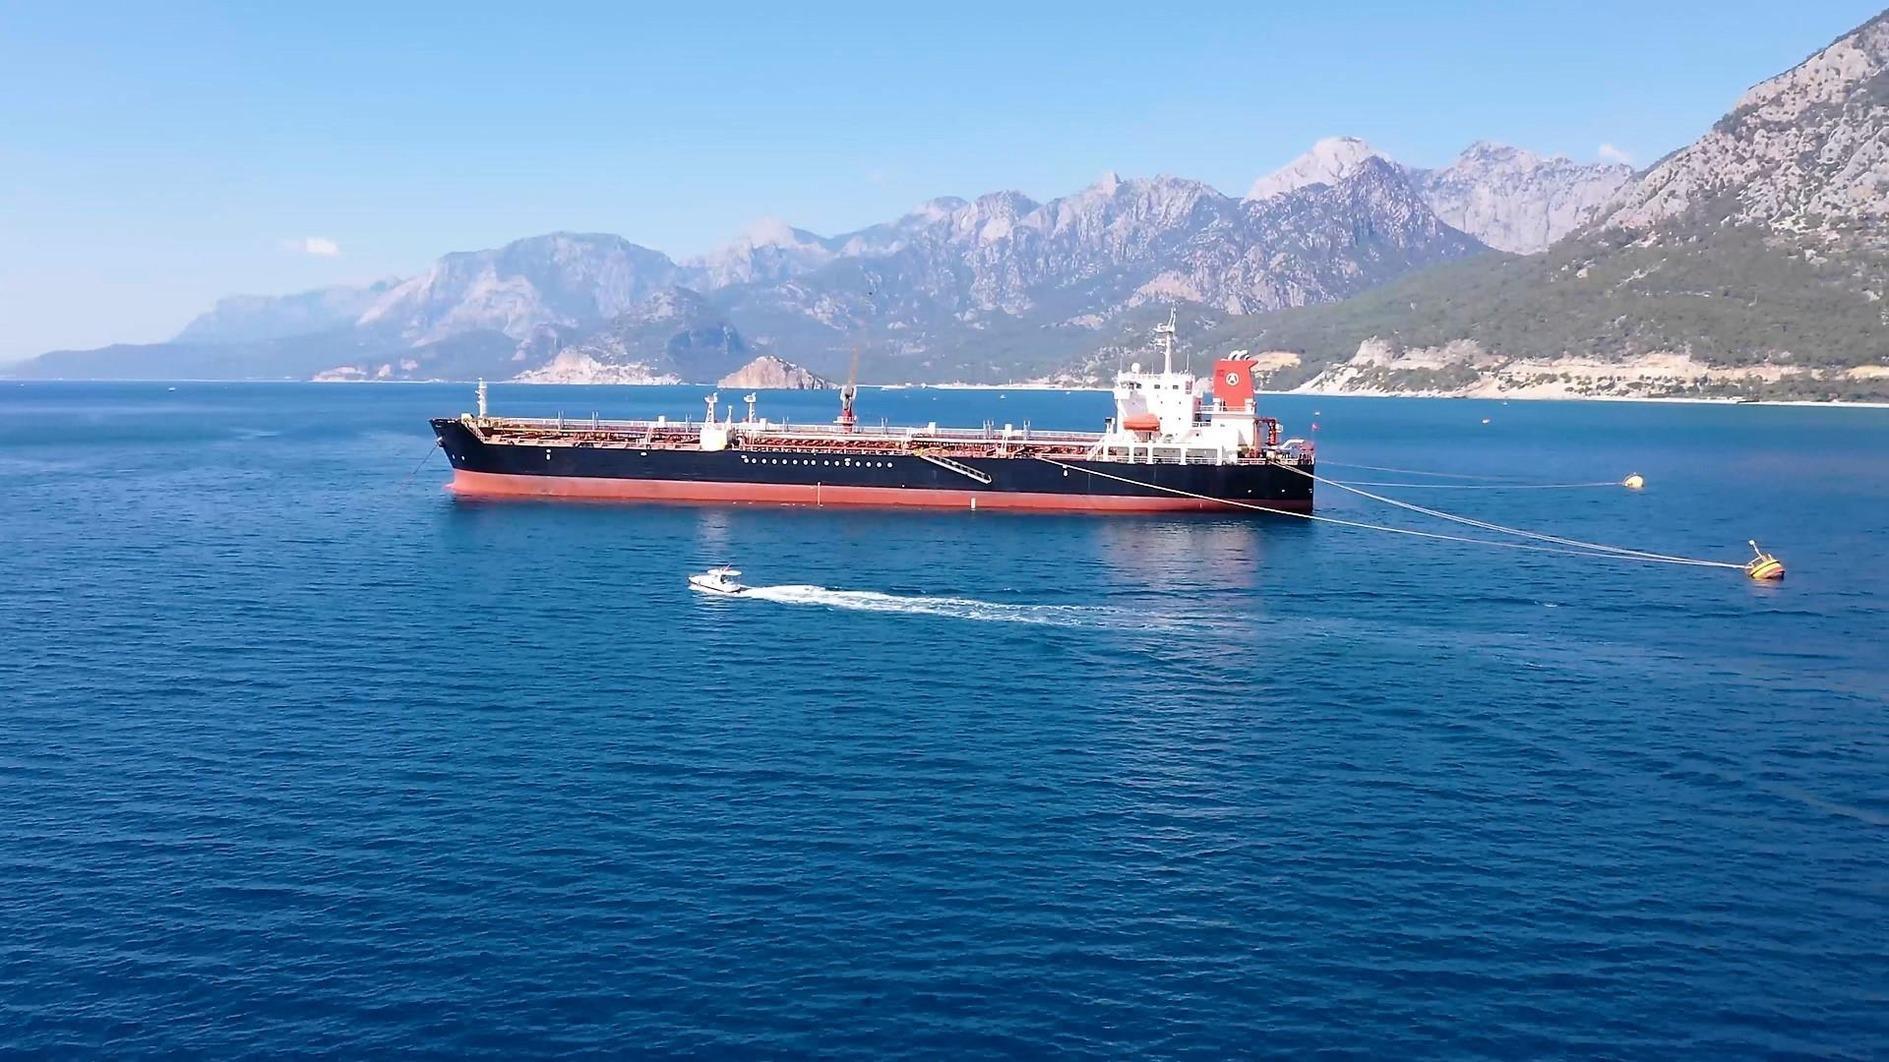 92 miljoen TL aan boetes opgelegd aan vervuilende schepen in Antalya